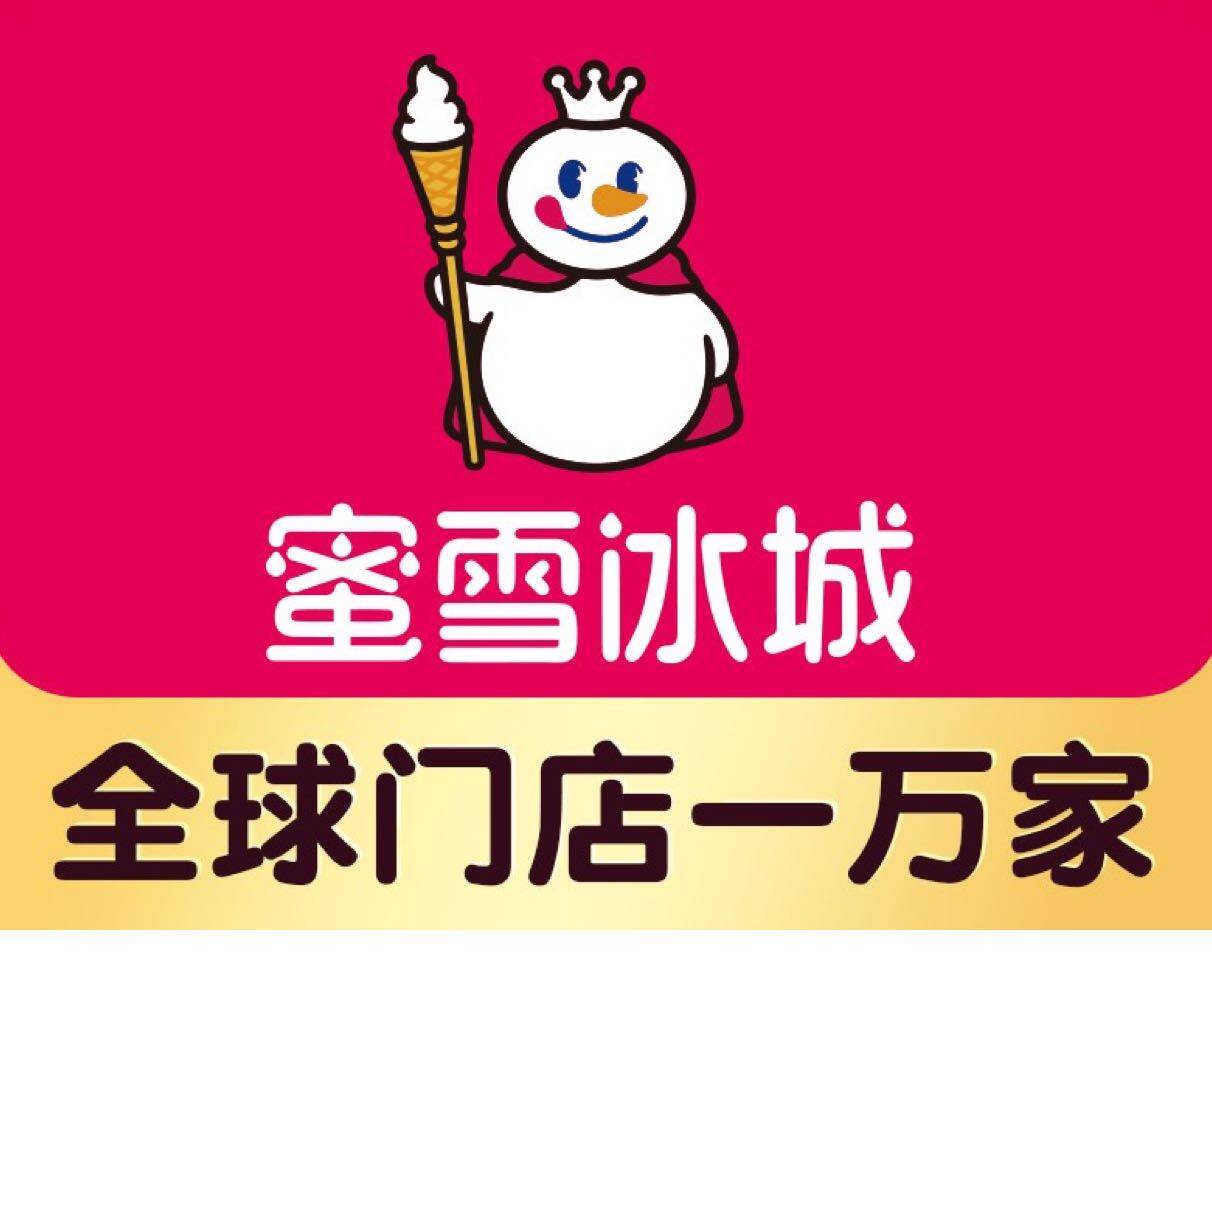 武汉东湖新技术开发区丽娜蜜雪冰城饮品店logo